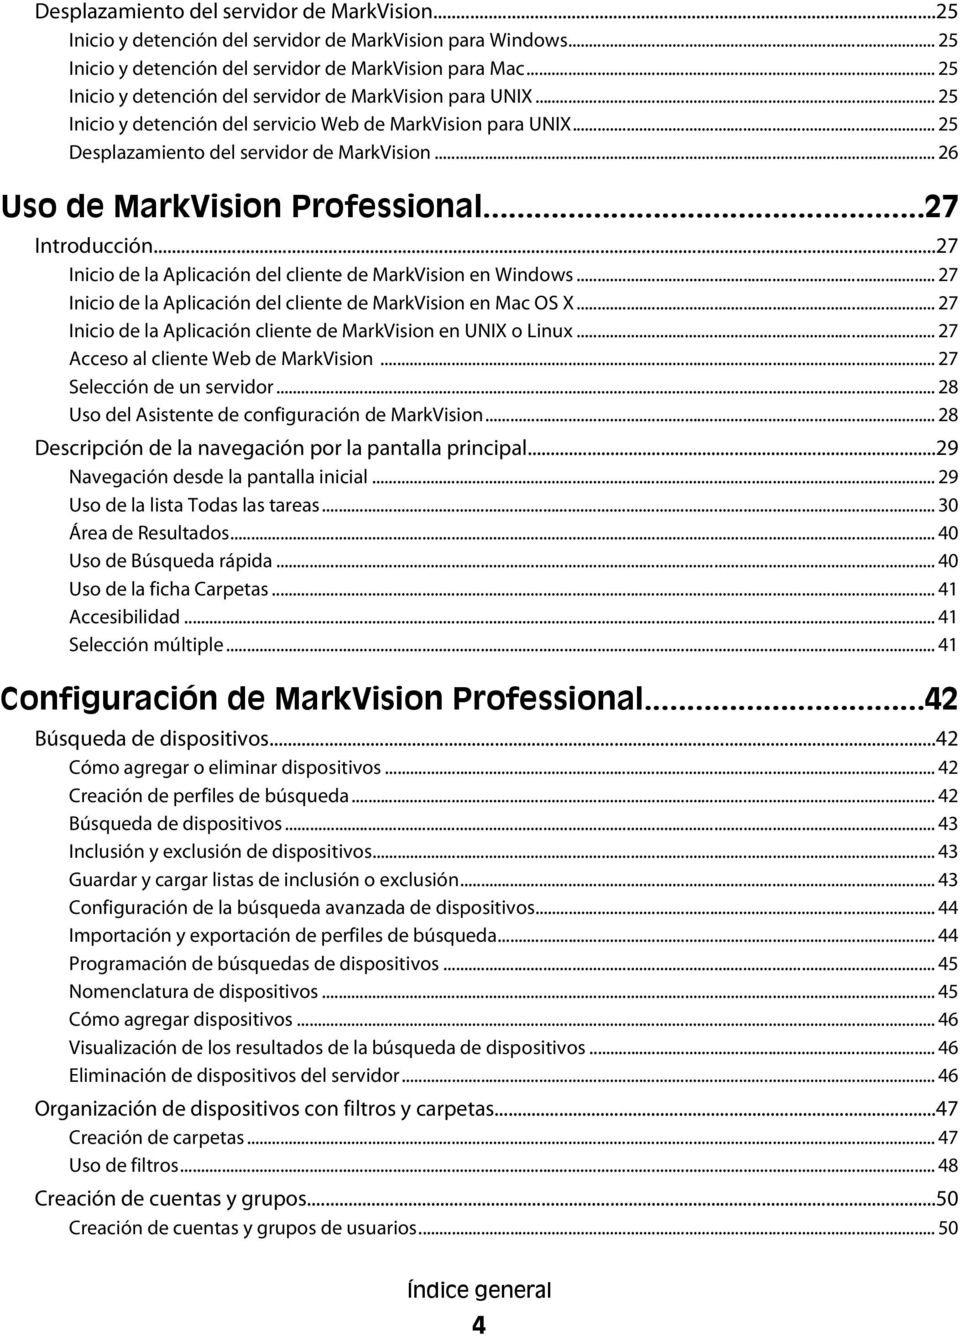 .. 26 Uso de MarkVision Professional...27 Introducción...27 Inicio de la Aplicación del cliente de MarkVision en Windows... 27 Inicio de la Aplicación del cliente de MarkVision en Mac OS X.